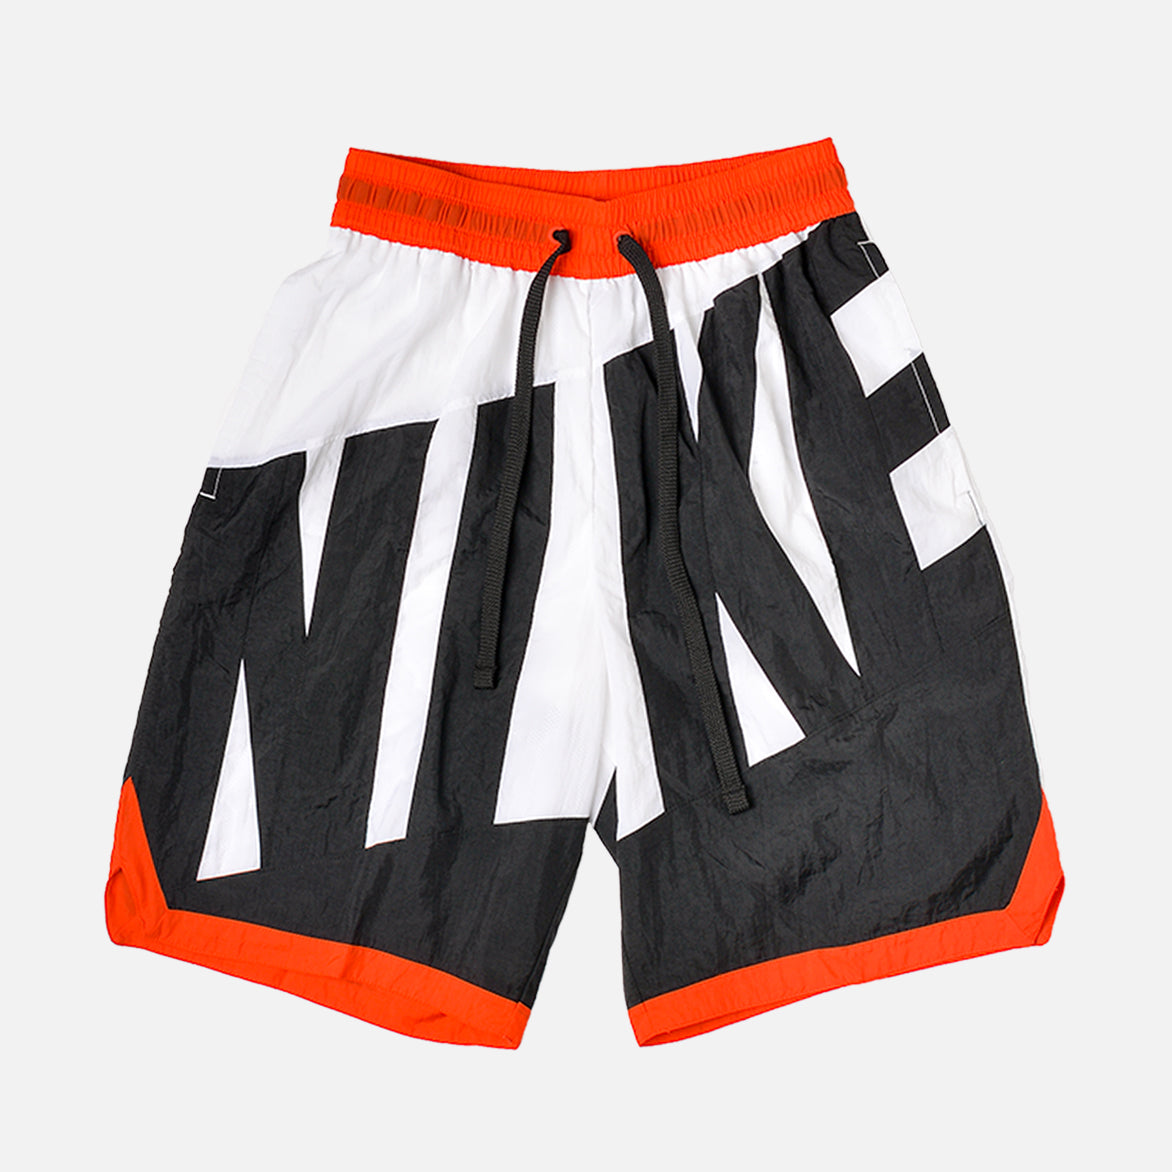 nike black and orange shorts